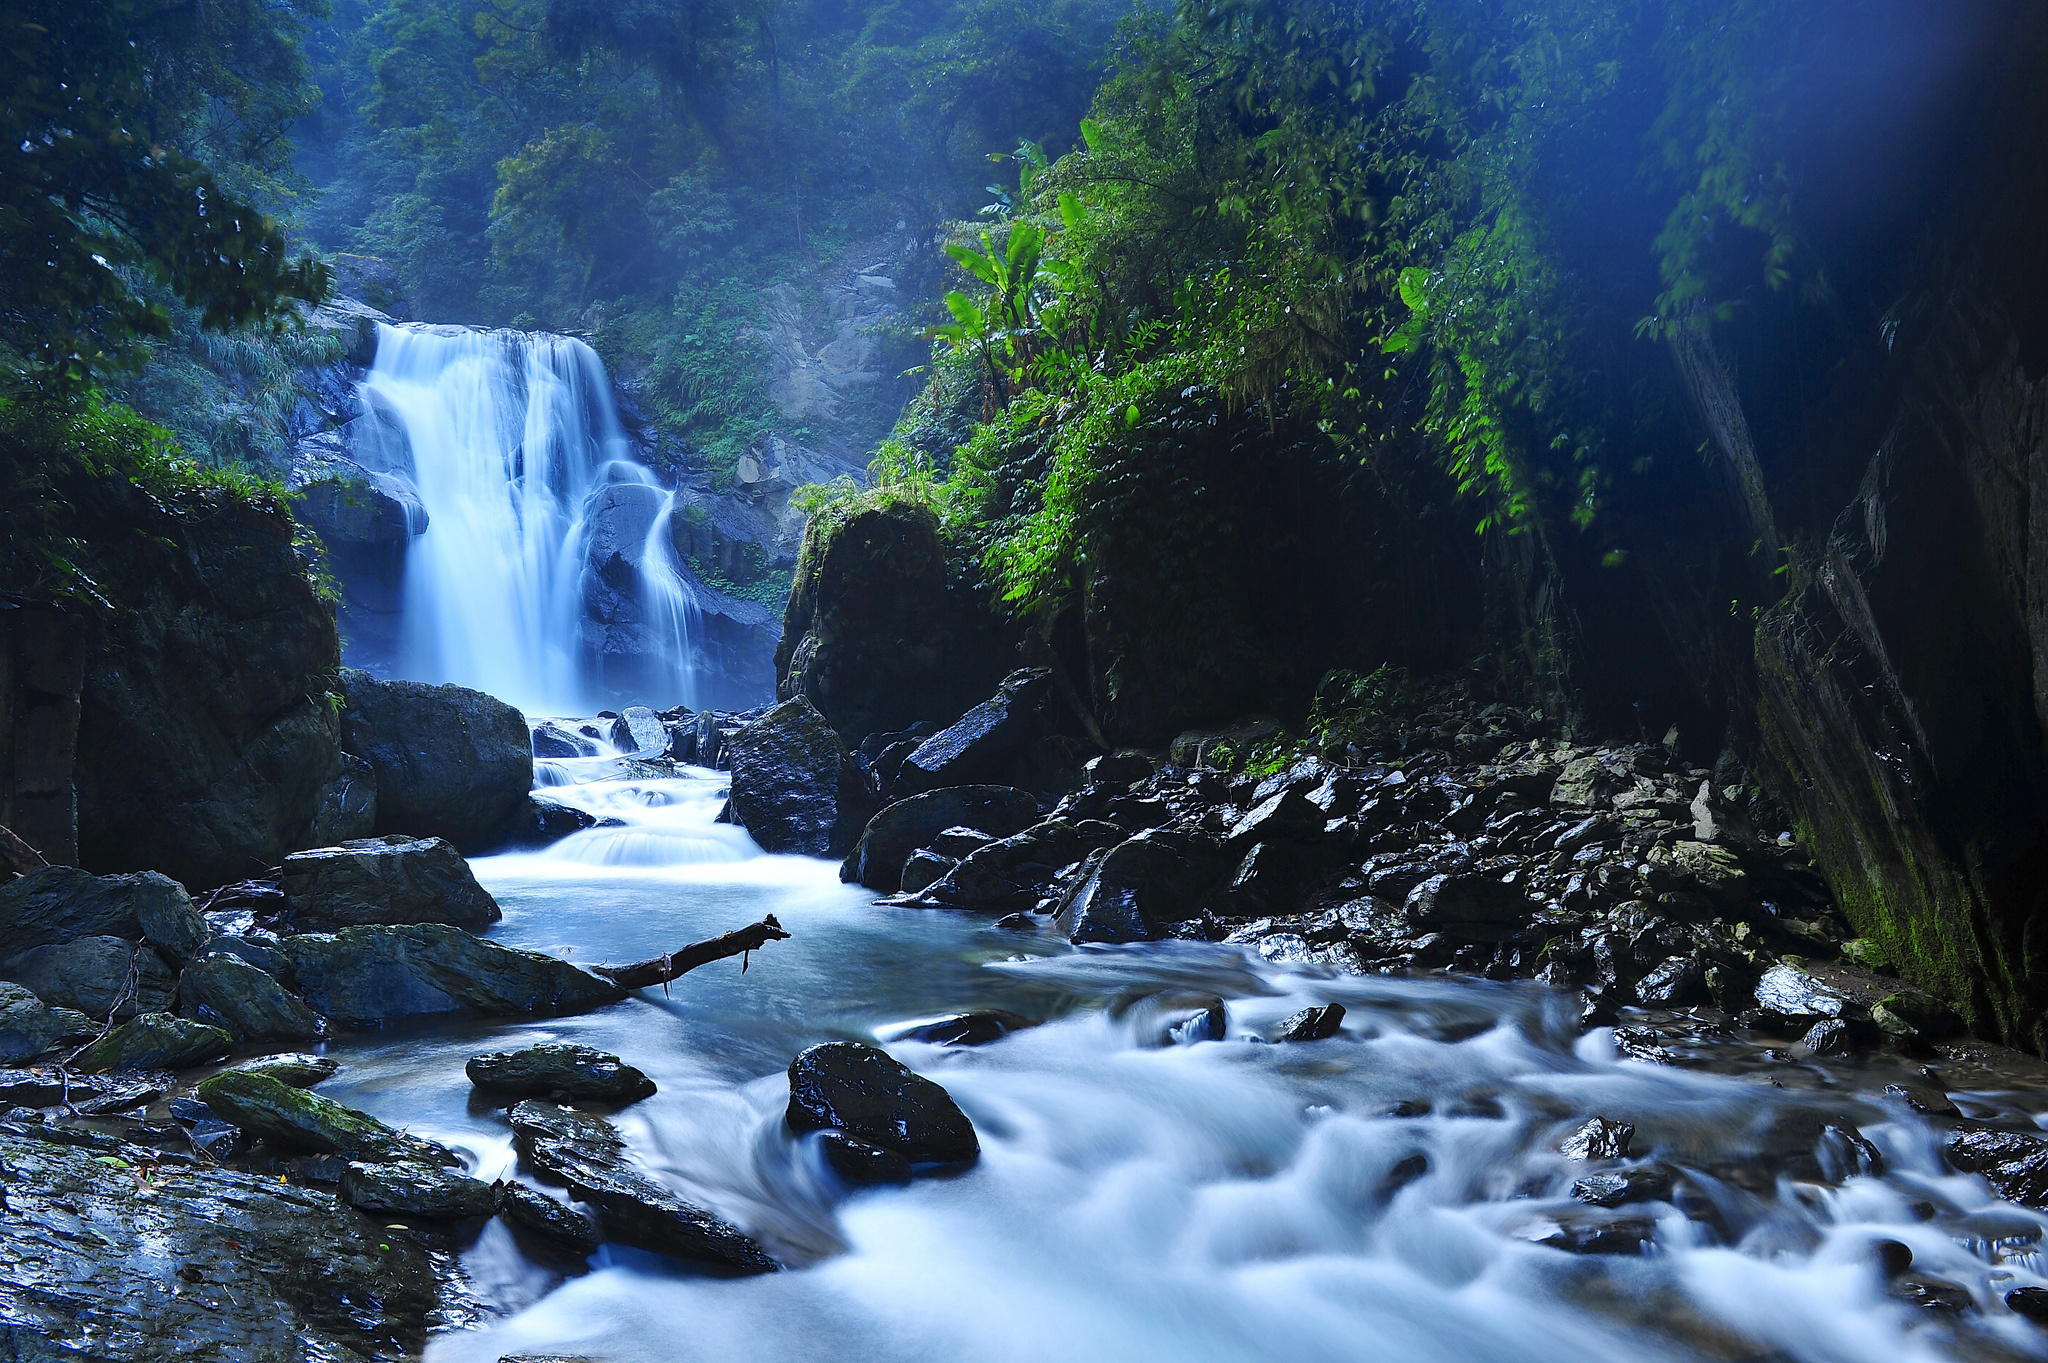 Mini water park - Ảnh của Khu du lịch văn hóa sinh thái Hồ Mây, Vũng Tàu -  Tripadvisor